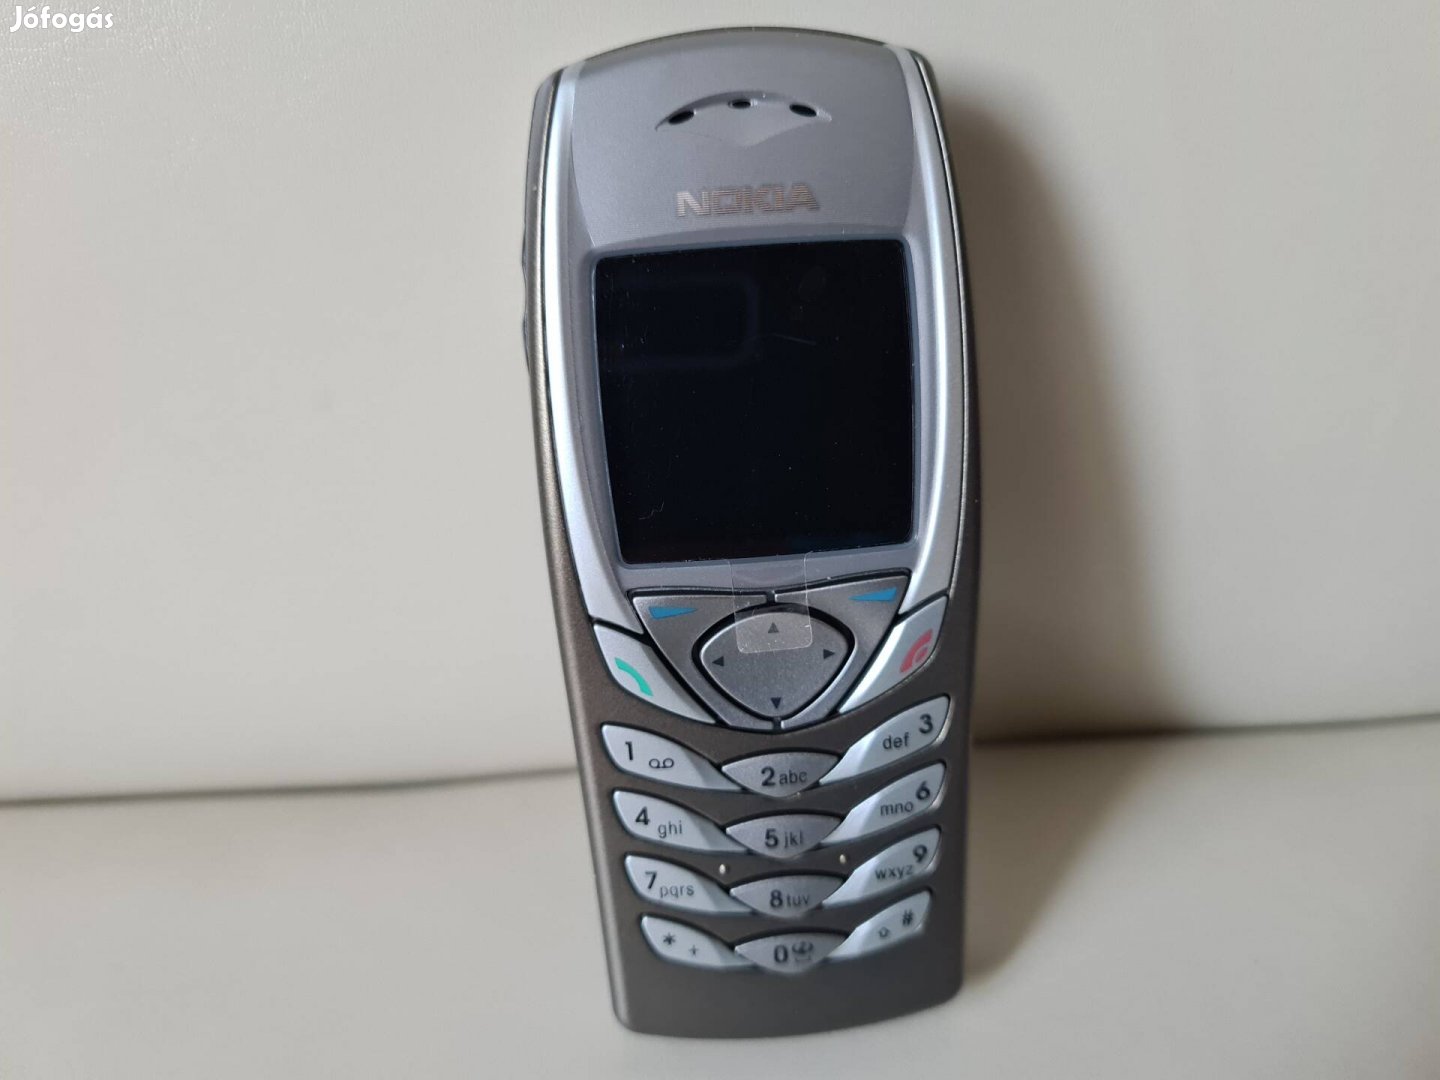 Új állapotban gyűjteményből eladó Nokia 6100